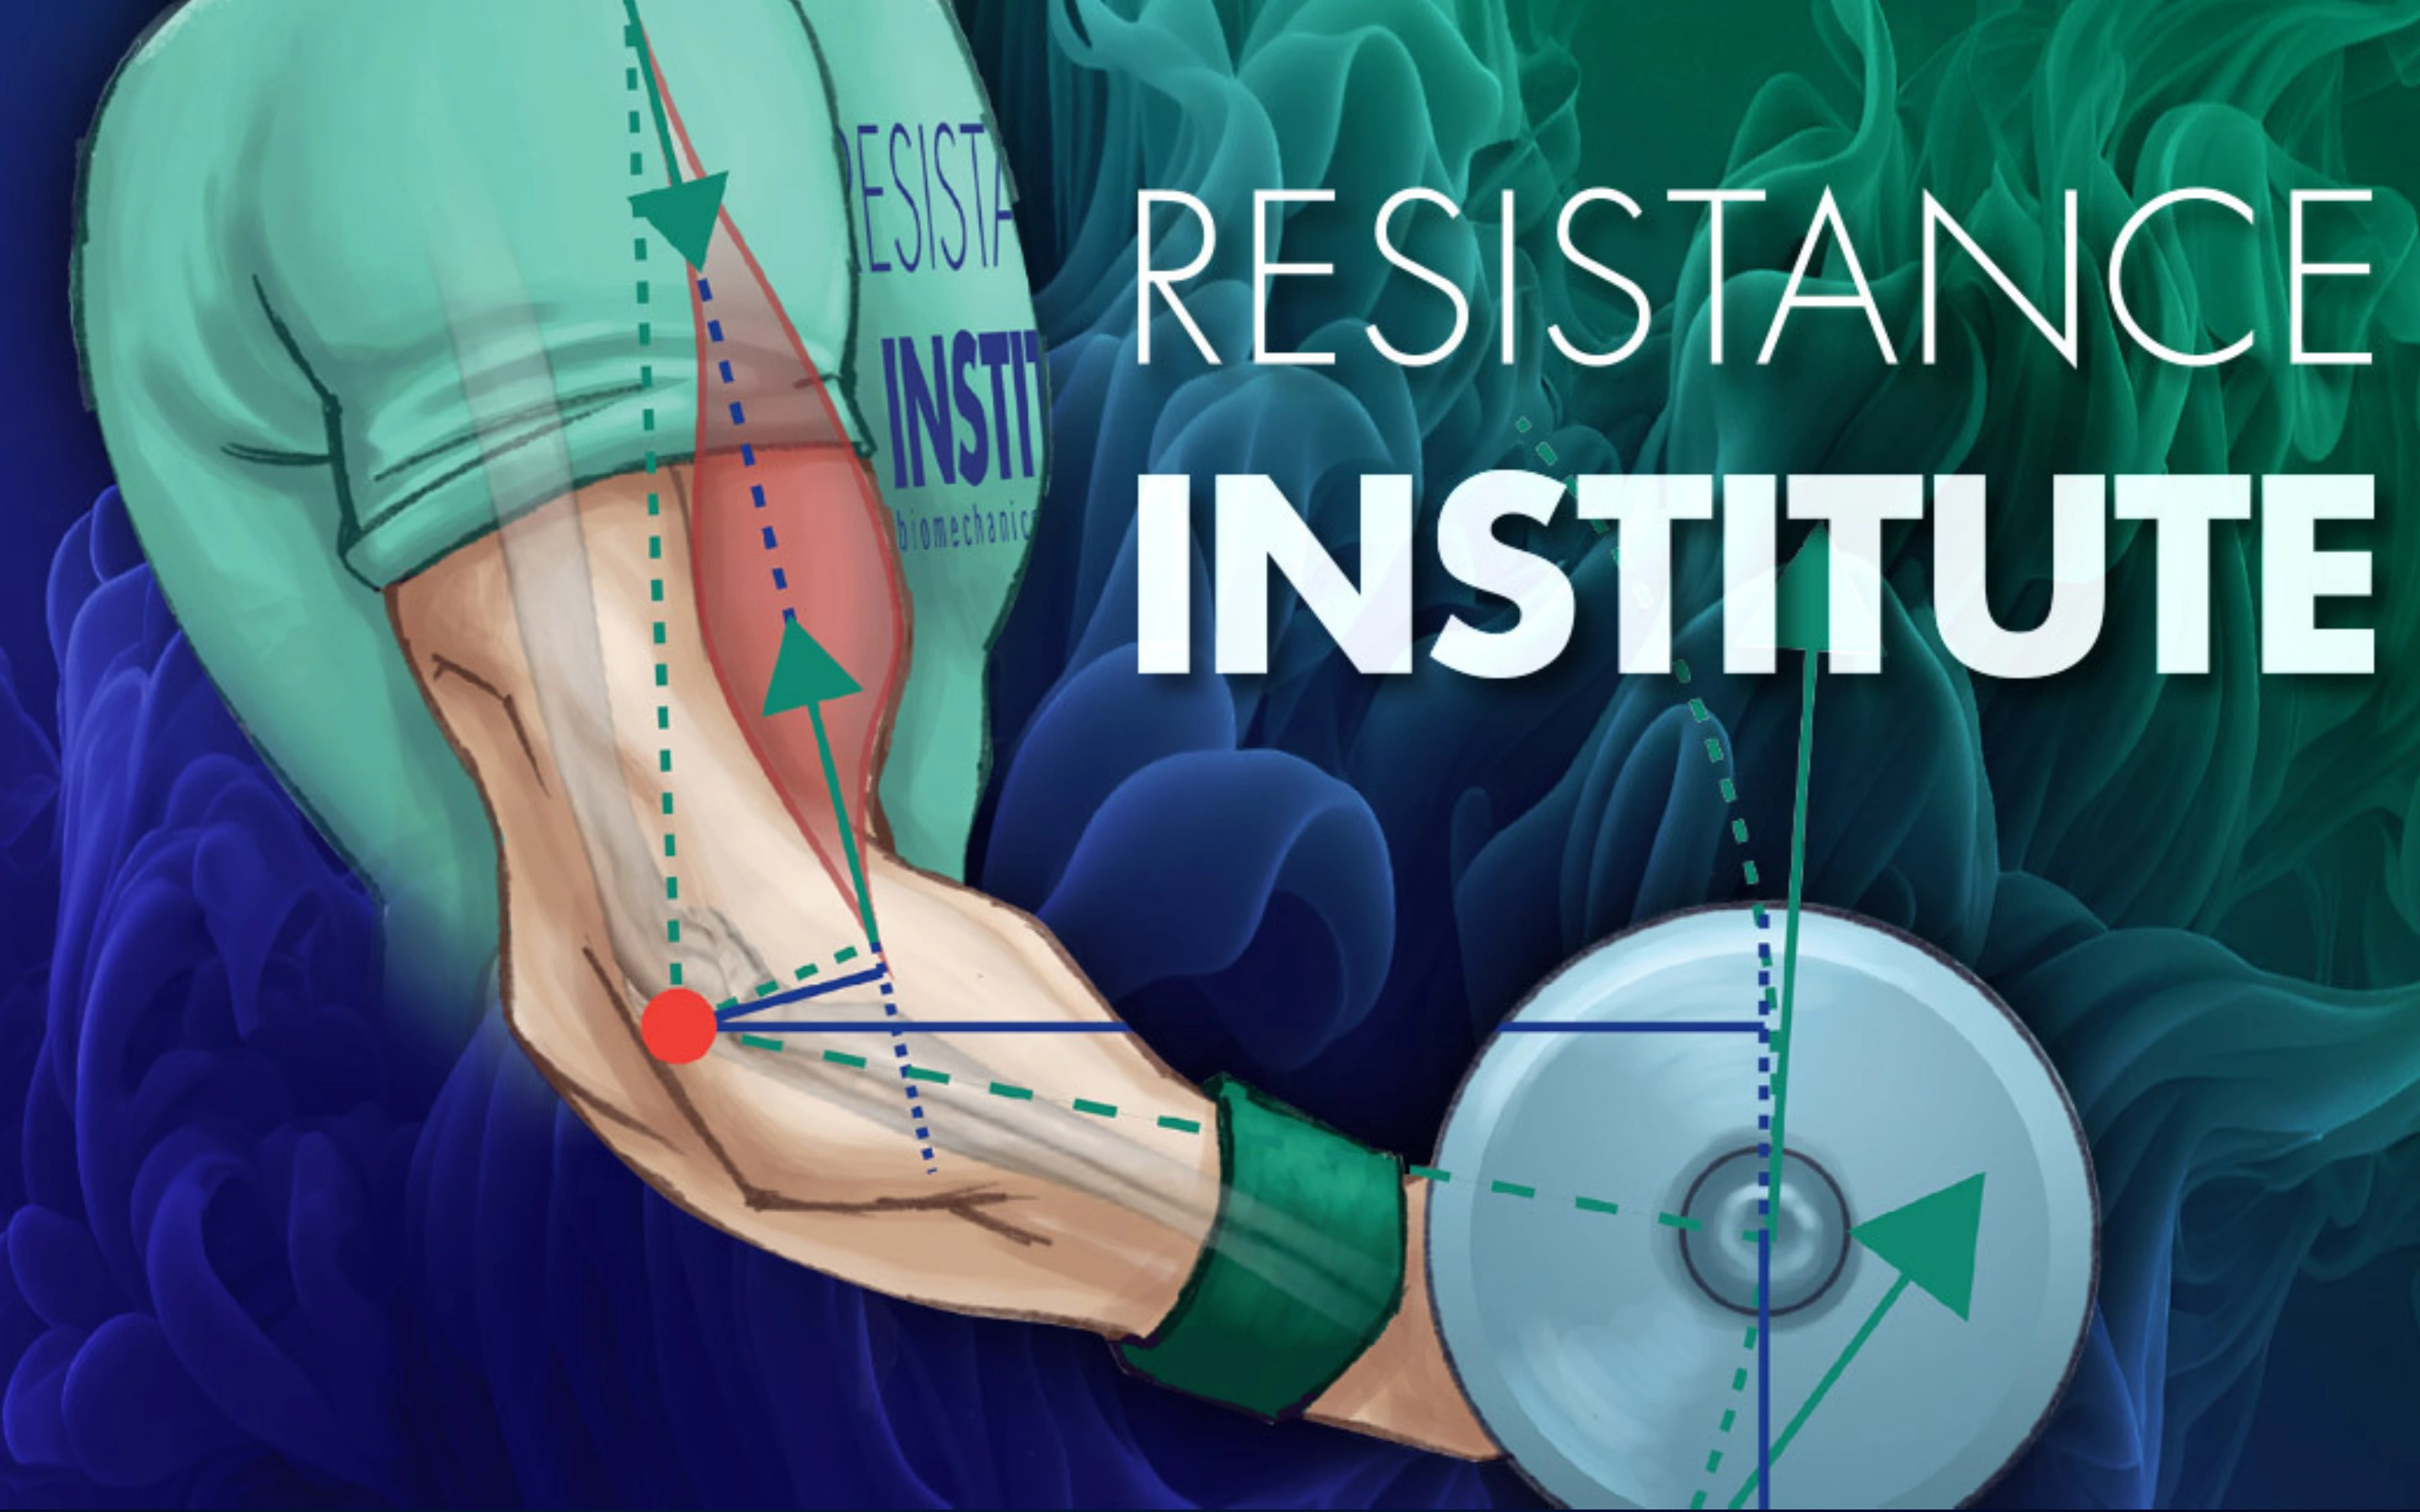 (c) Resistanceinstitute.com